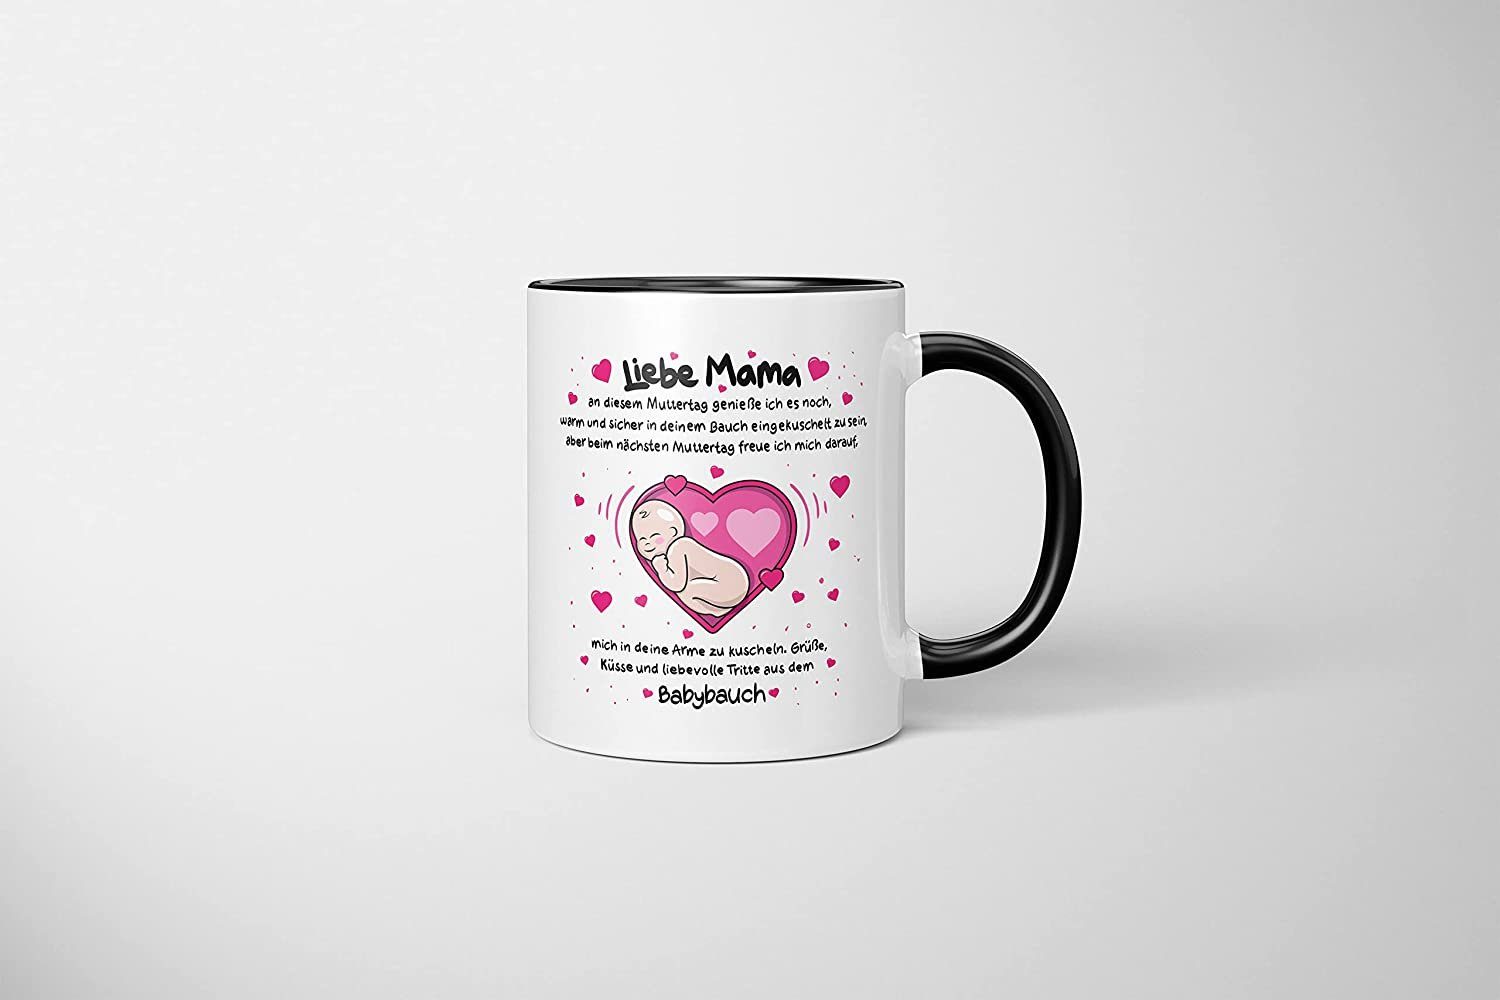 TassenTicker Tasse LIEBTASTISCH - werdende Mama 330ml Mama, eine Liebe Schwarz -Geschenk Muttertag - für